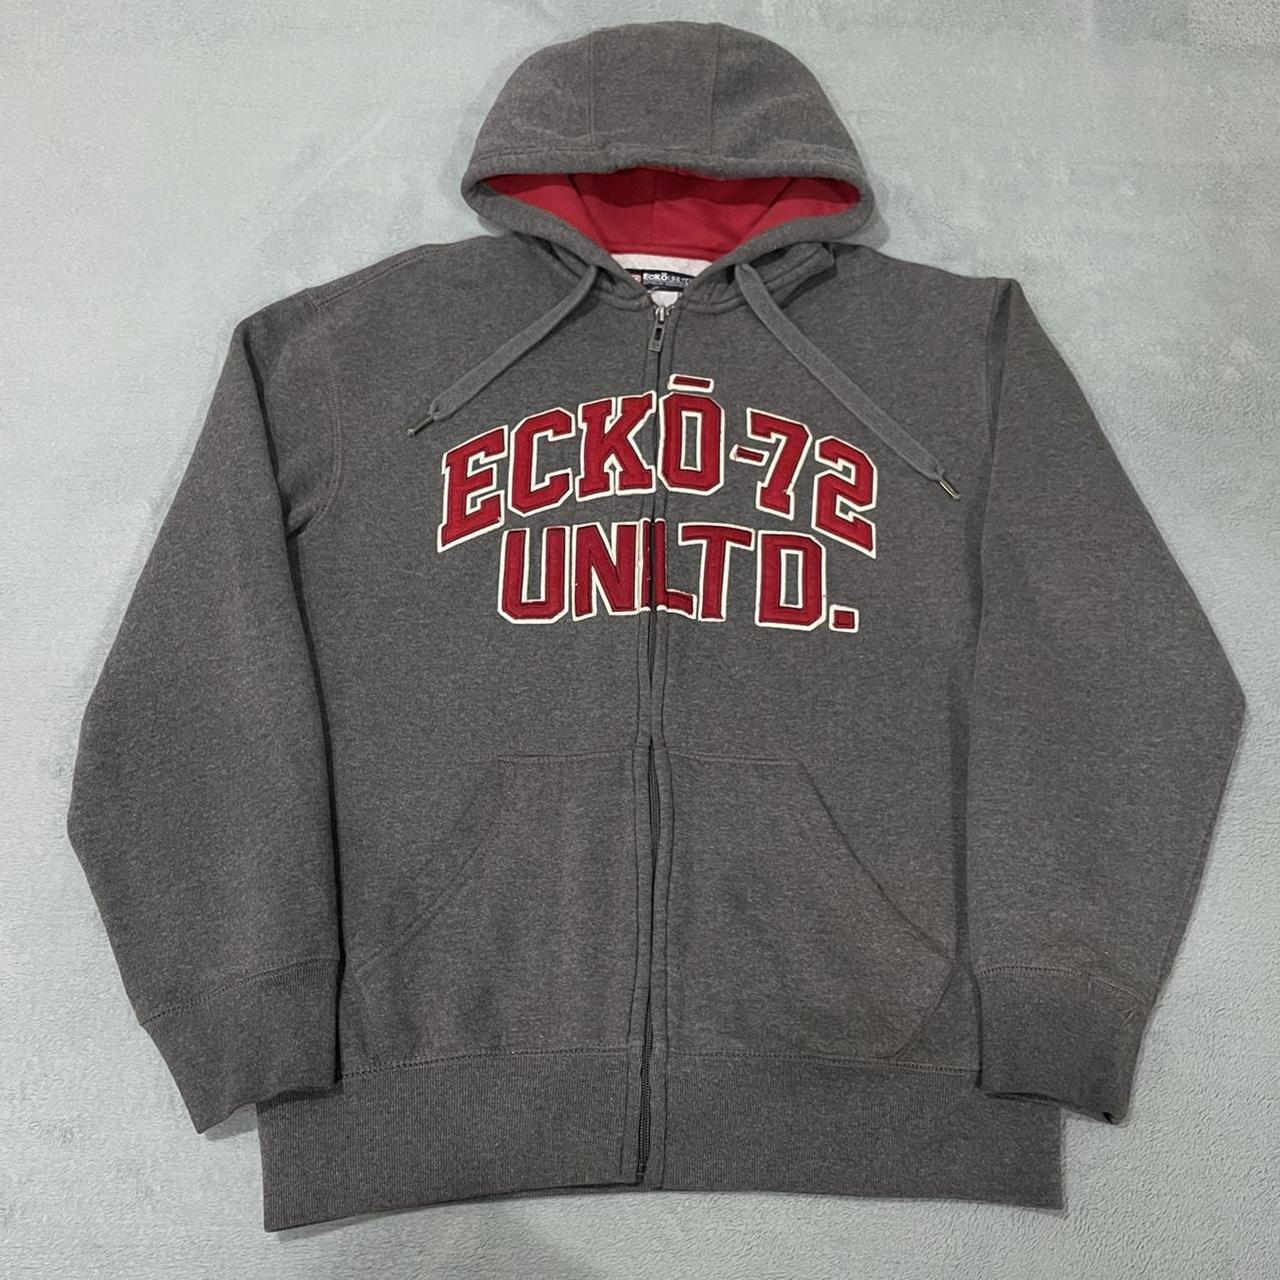 Ecko Unltd 72 Full Zip Hoodie Sweatshirt Gray Red... - Depop